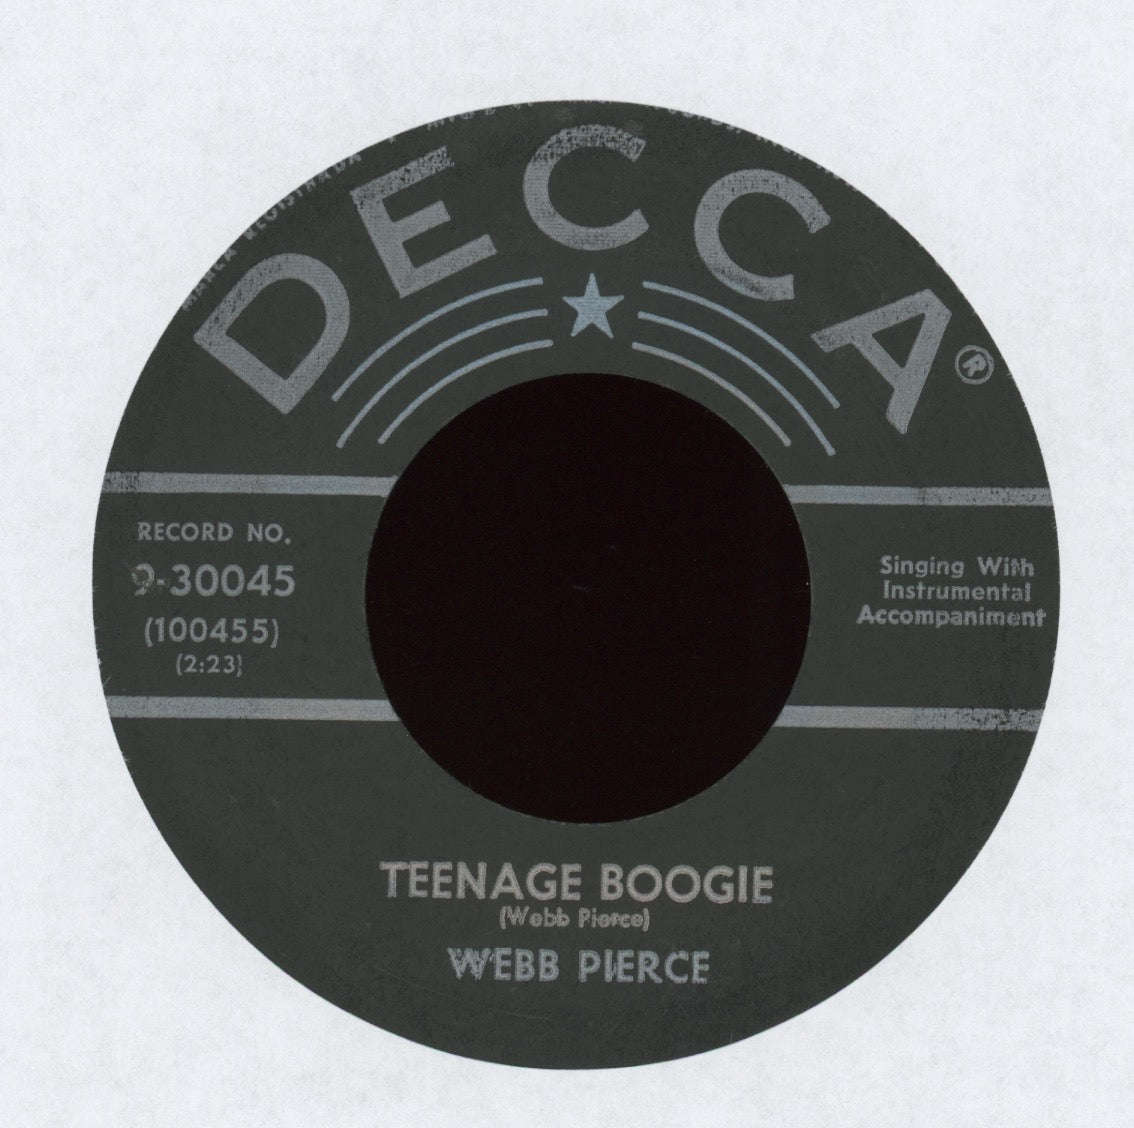 Webb Pierce - Teenage Boogie on Decca